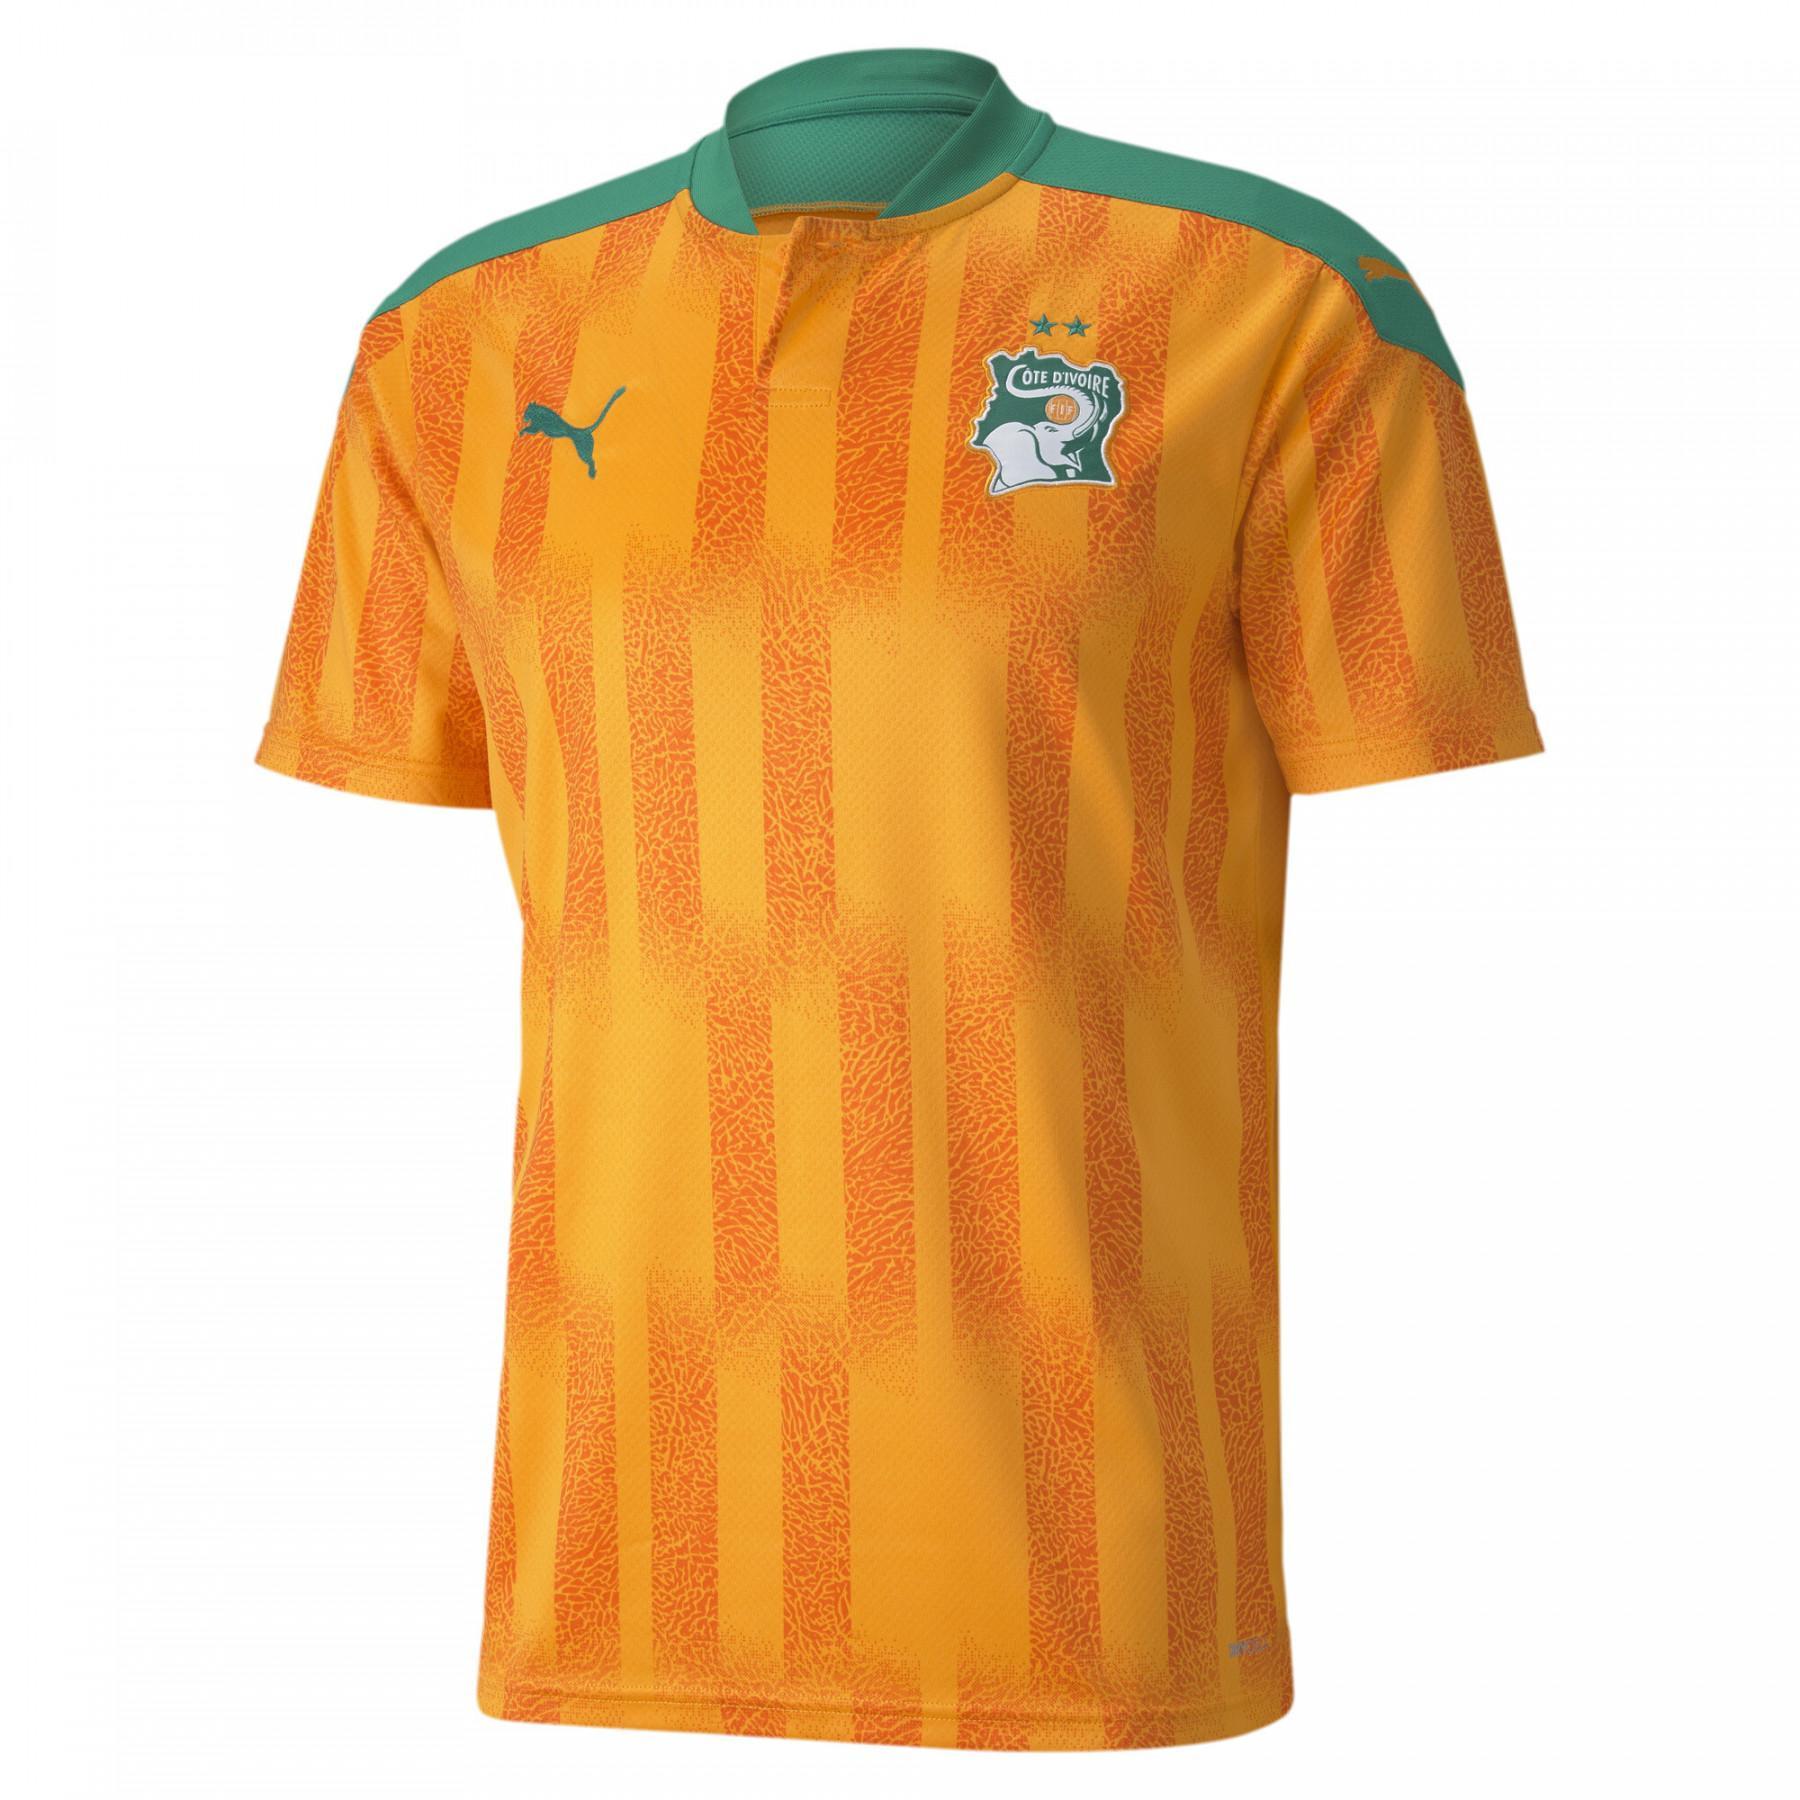 Home jersey Côte d'Ivoire 2020